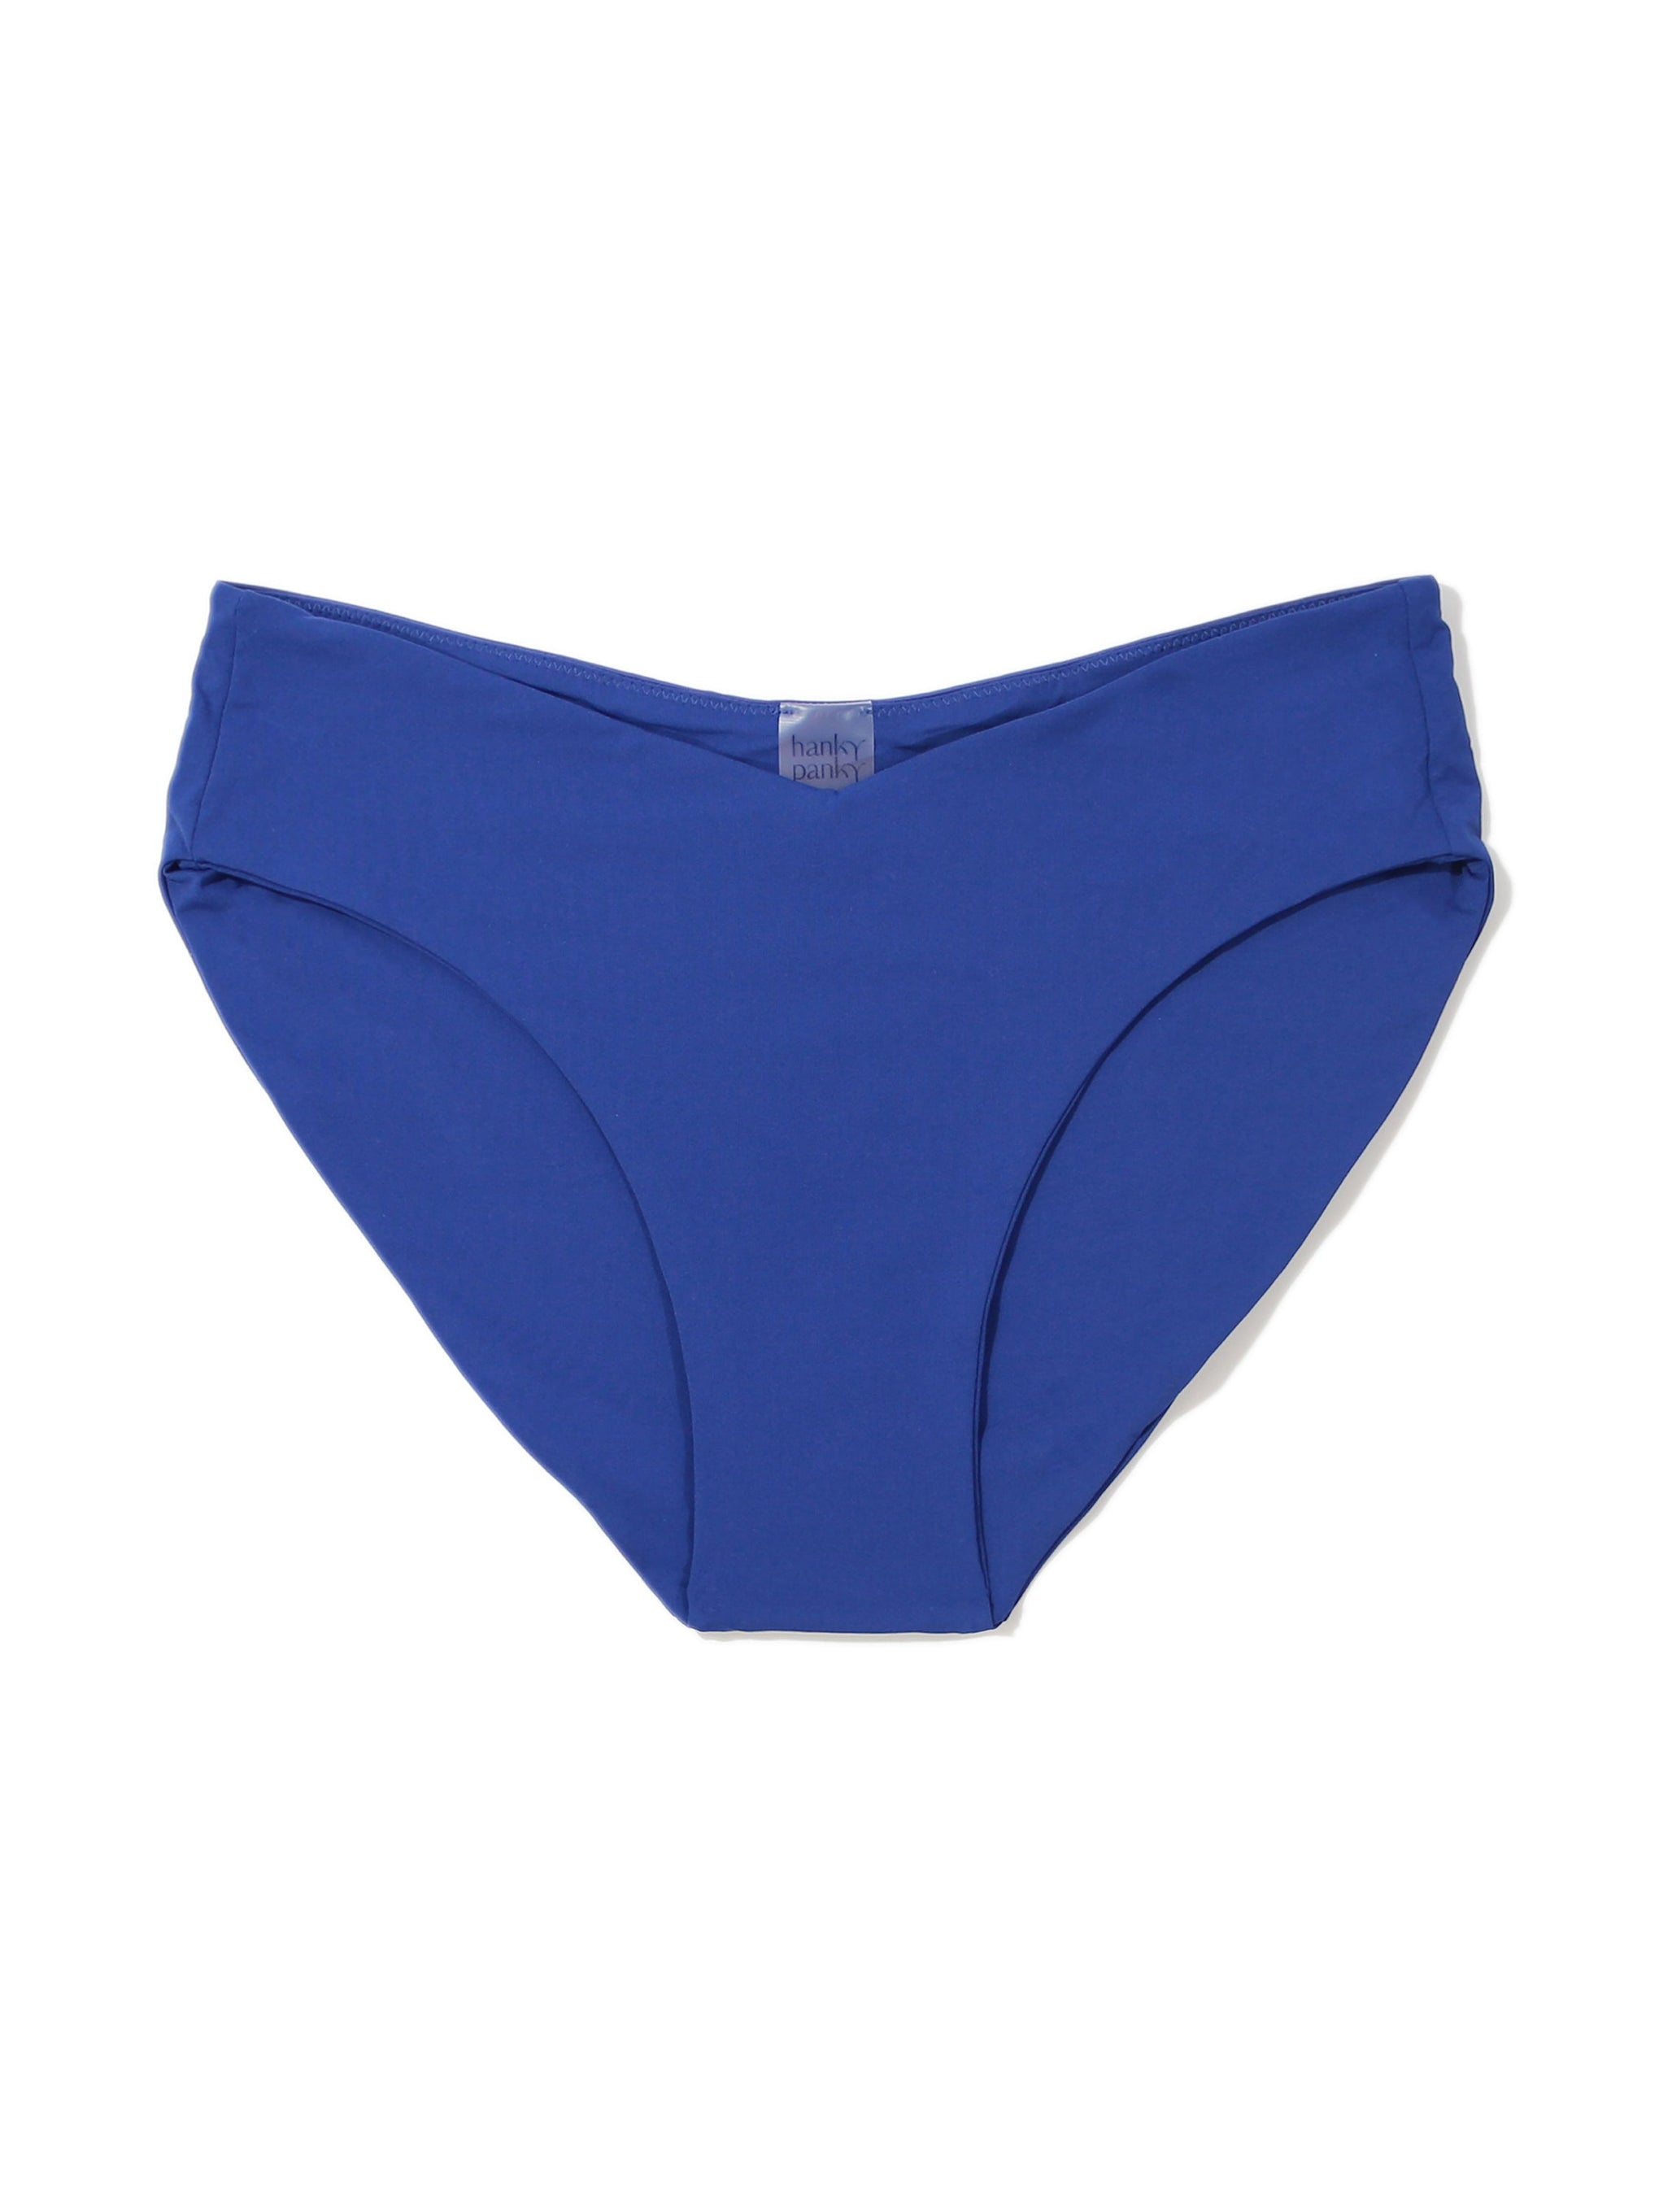 V-Kini Swimsuit Bottom Poolside Blue